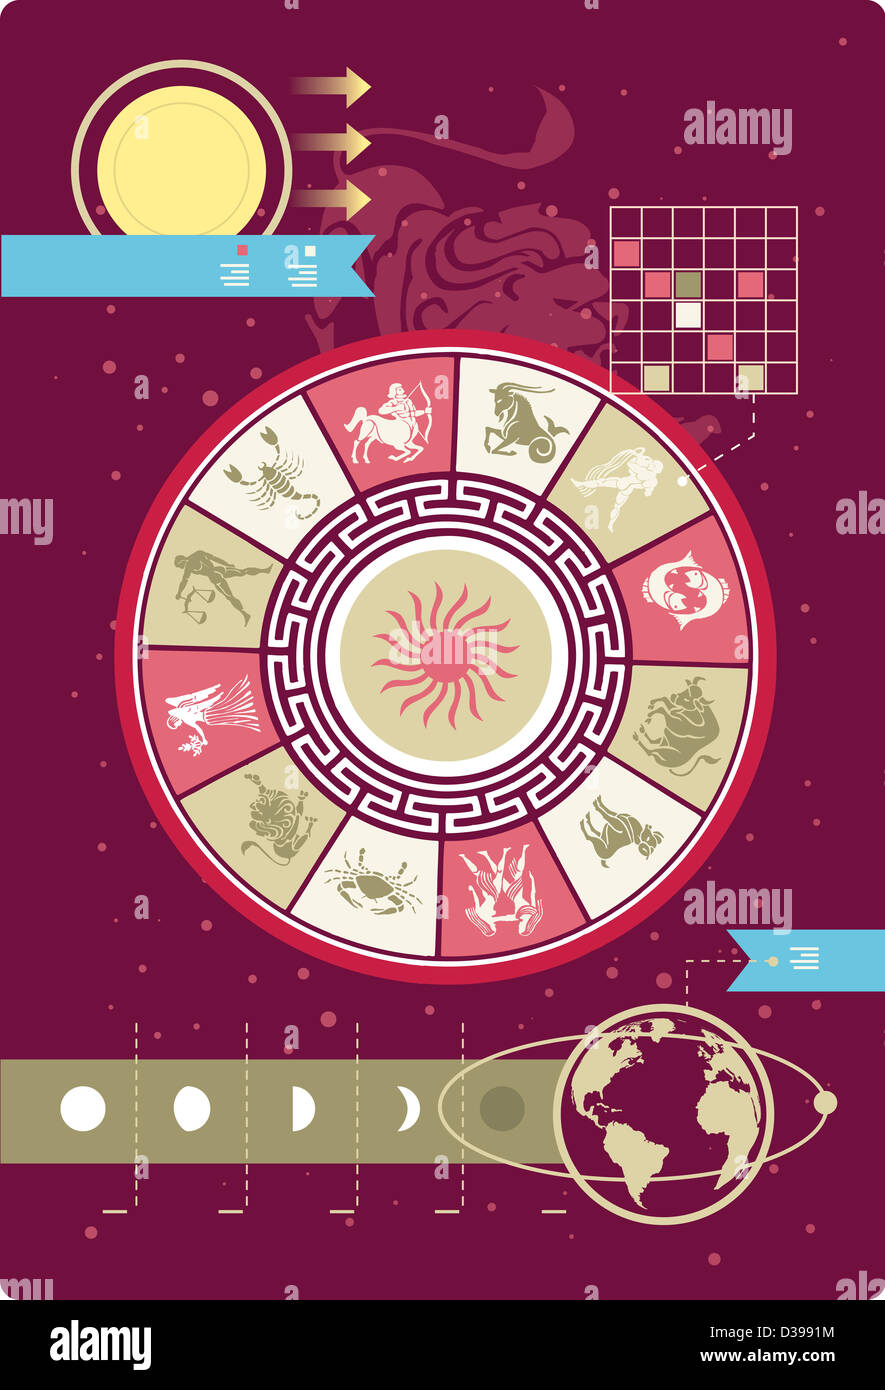 Anschauliches Bild der Astrologie Zeichen im Stil der Infografik Stockfoto